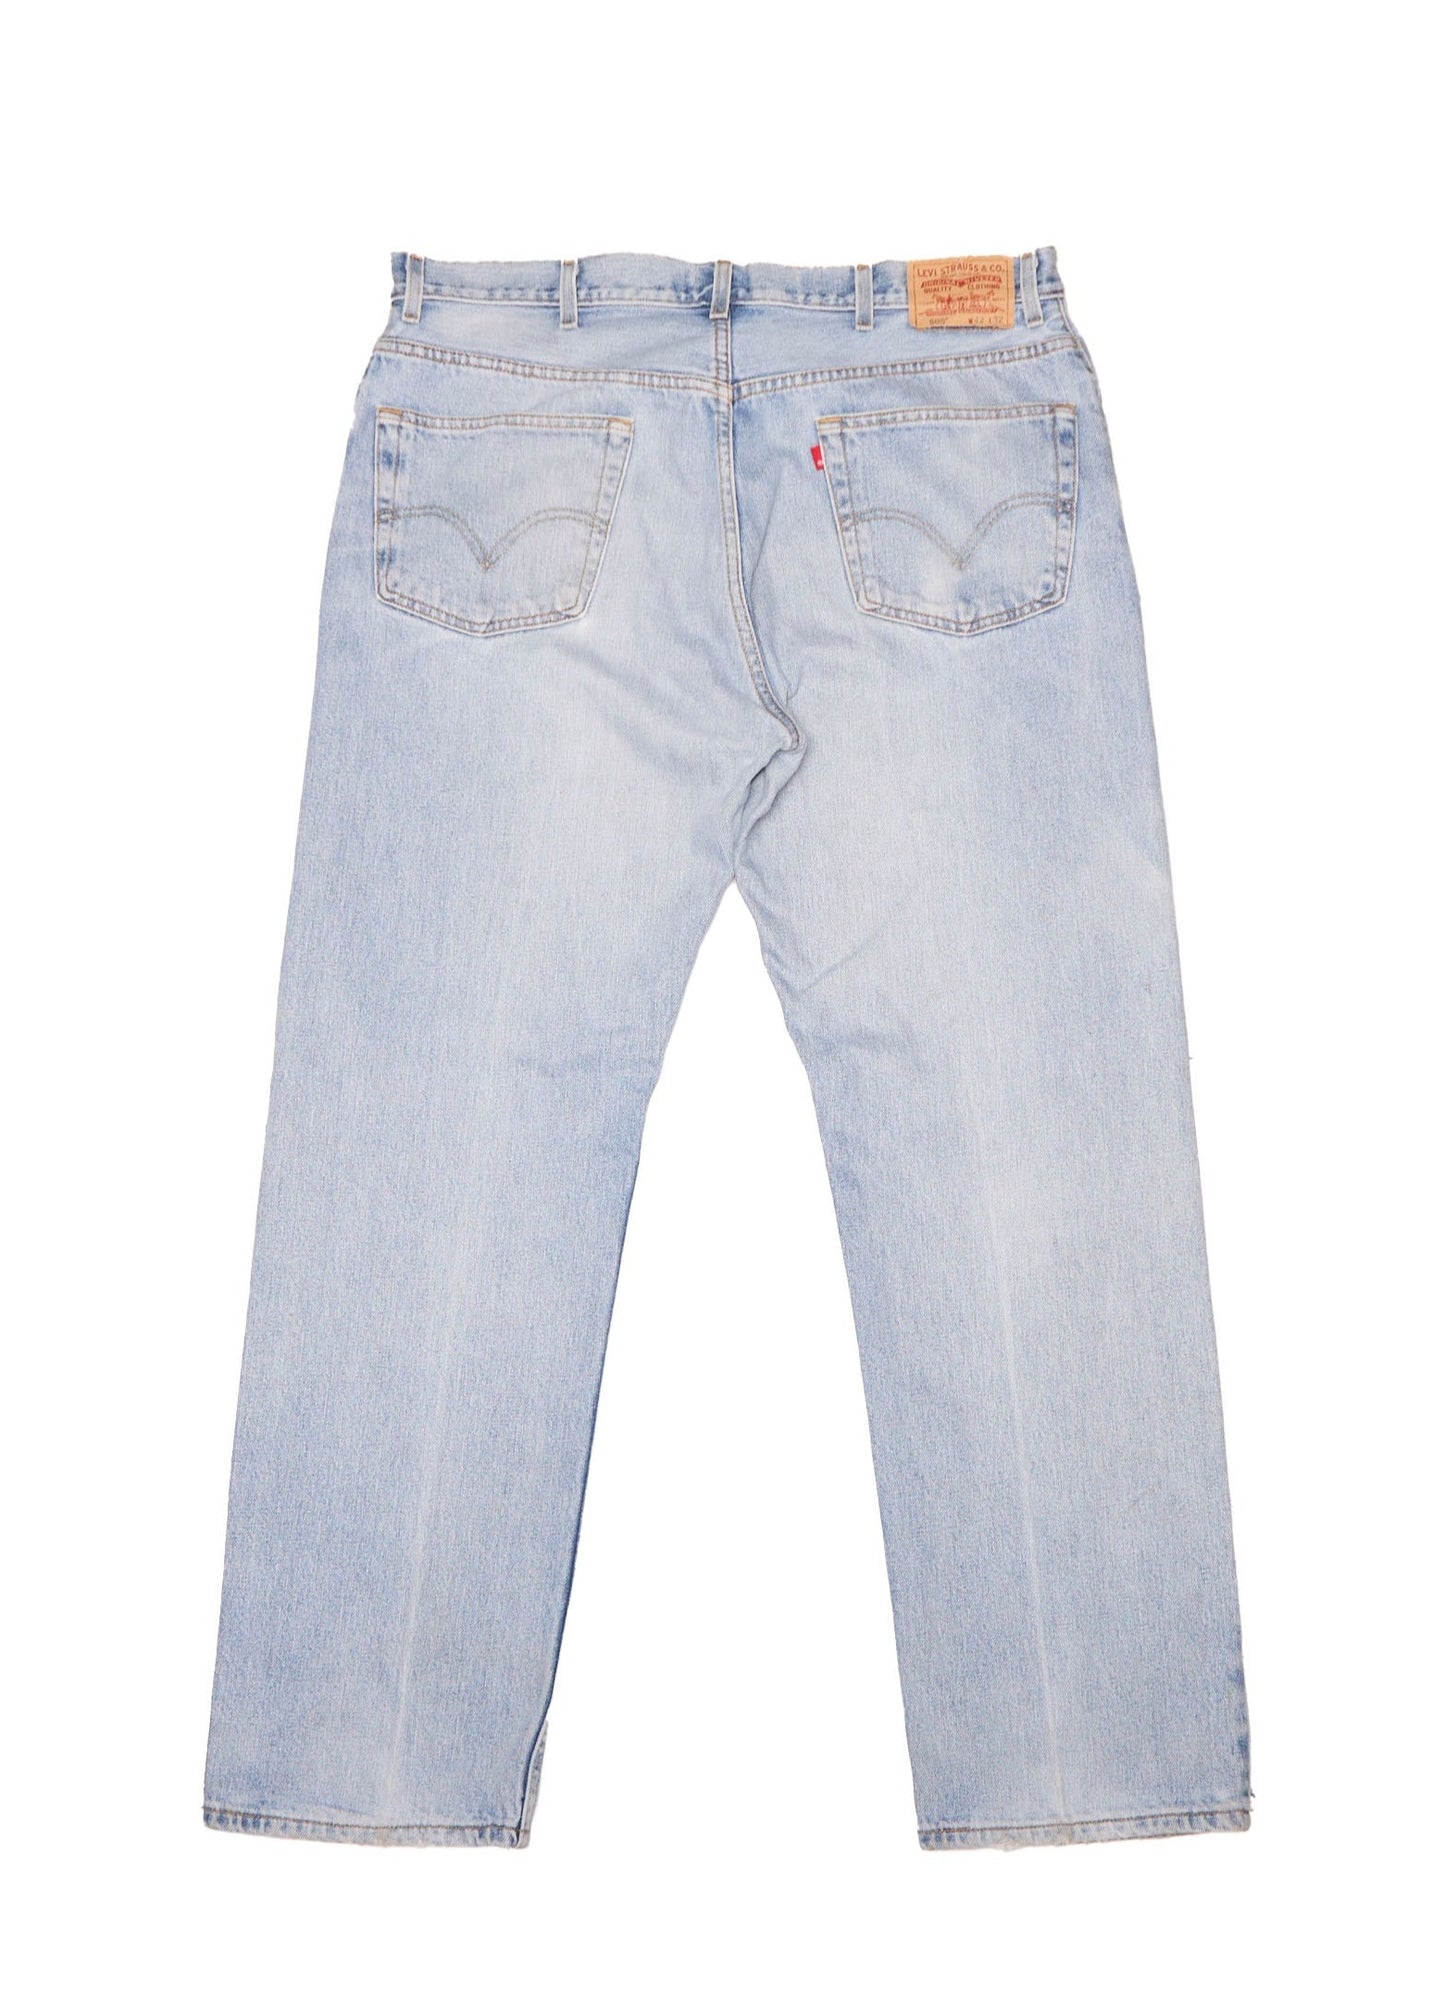 Jeans Levis de corte recto con cremallera - Ancho 42" Largo 32"